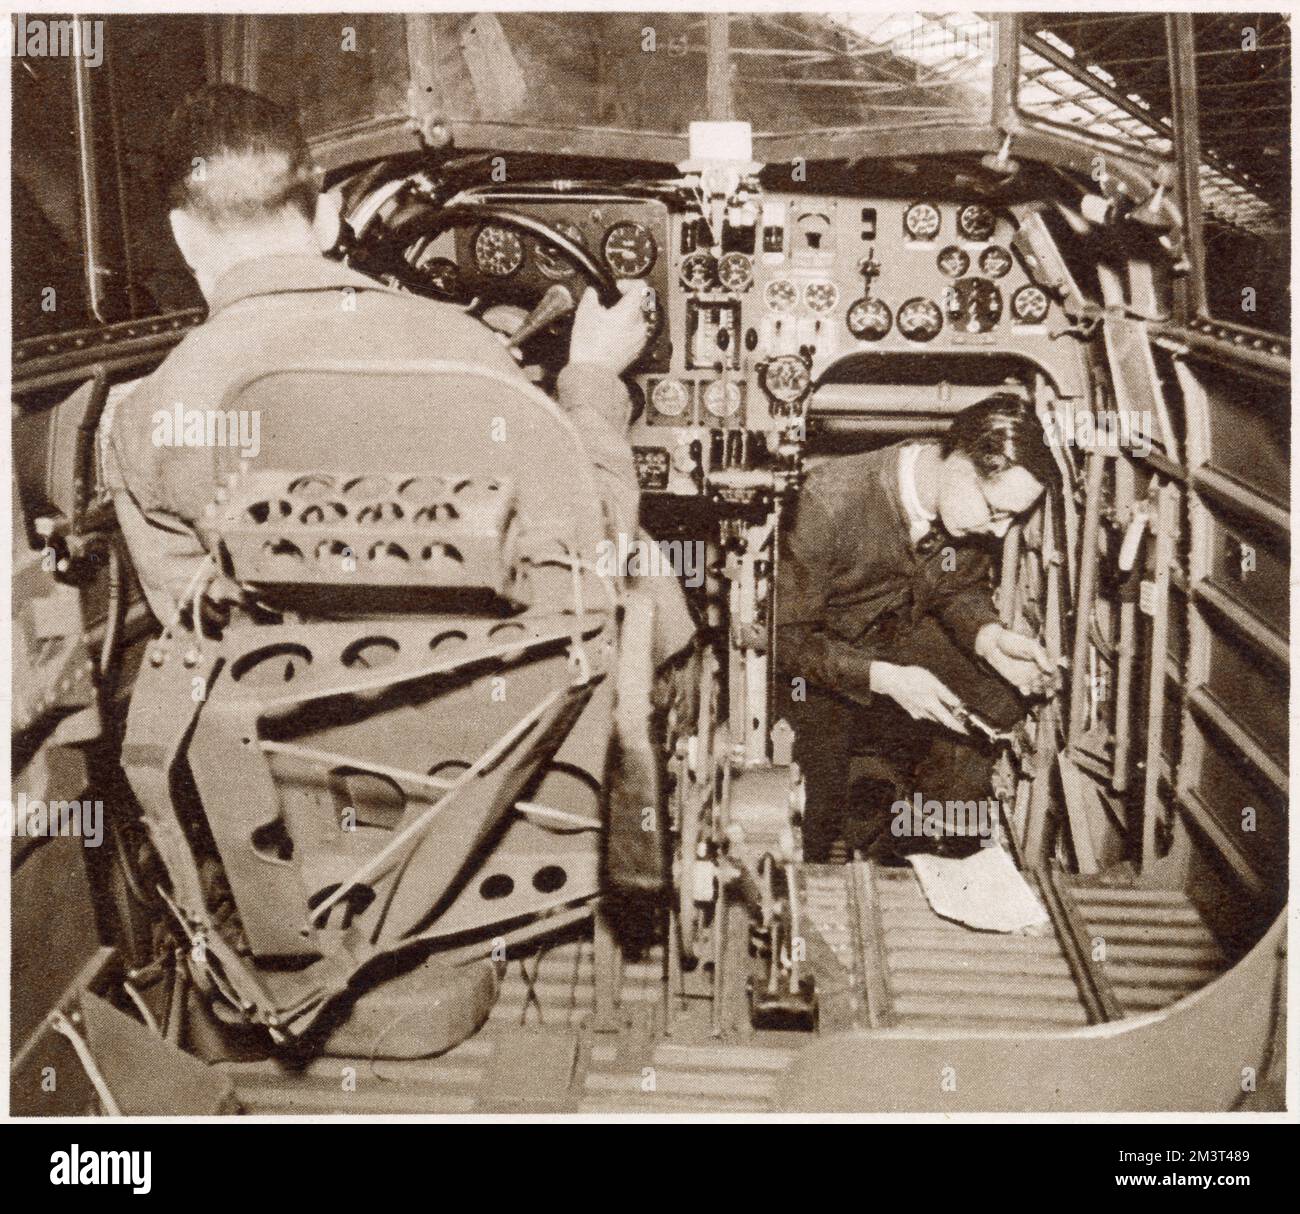 Esecuzione di test in un bombardiere Whitley finito ad Armstrong Whitworth a Coventry. Uomini che ispezionano i comandi nel cockpit del pilota. Foto Stock